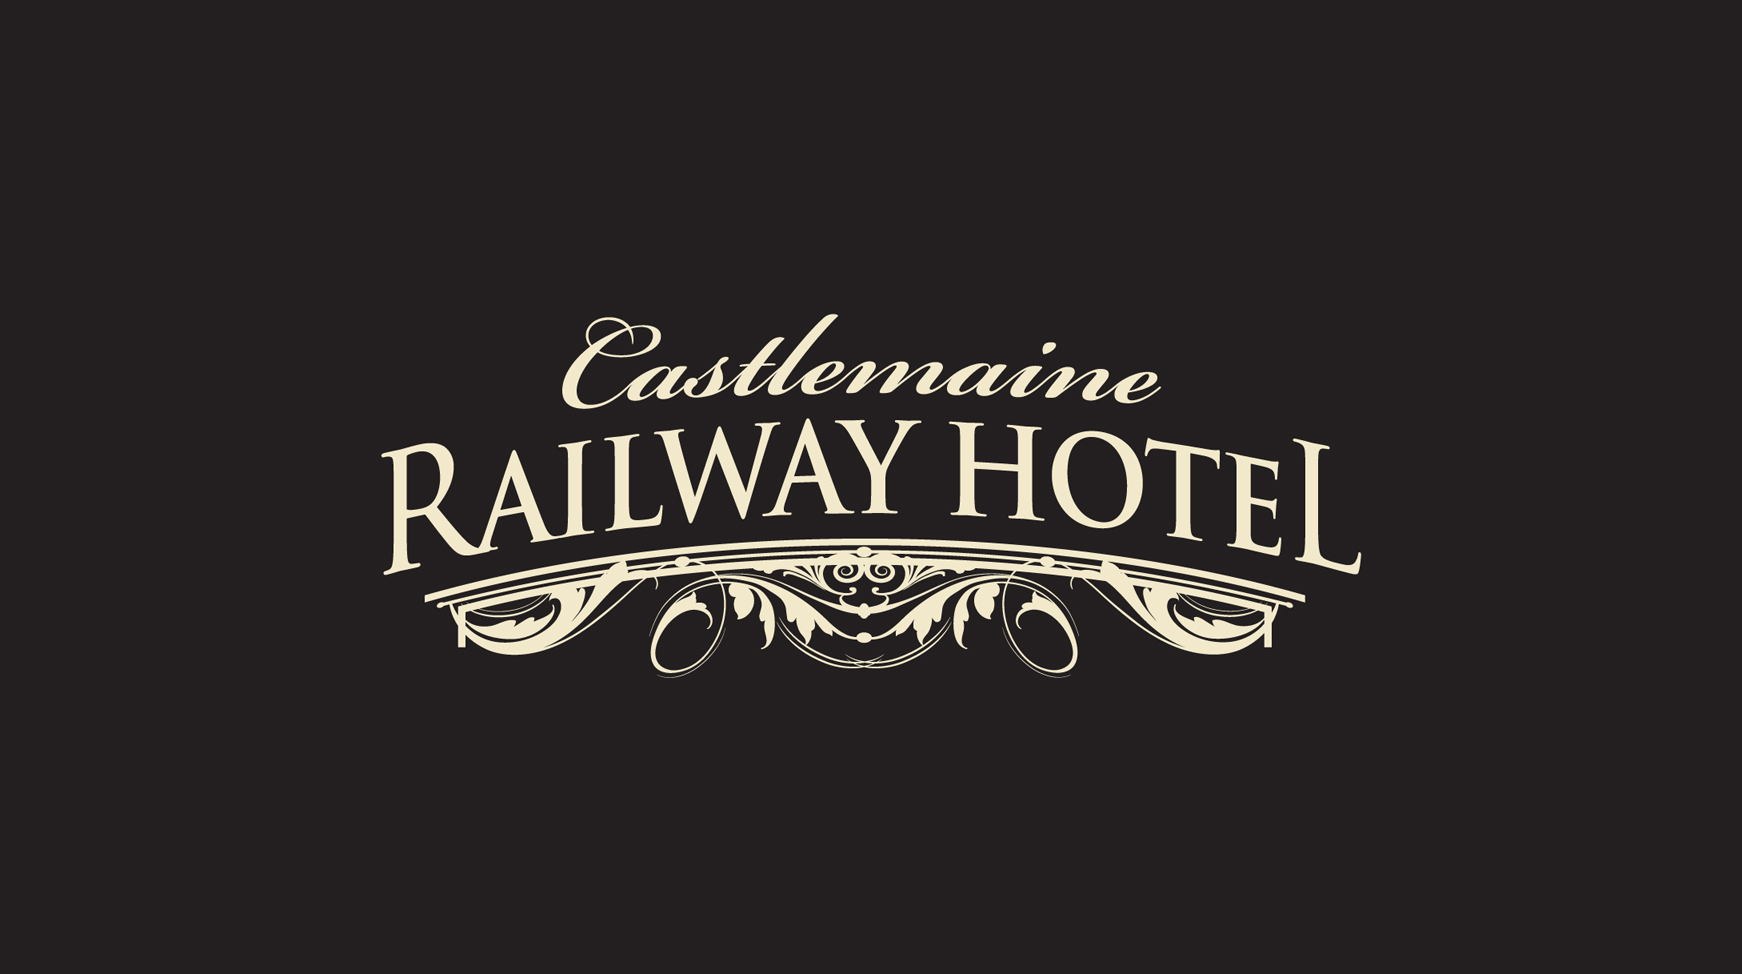 Railway Hotel Castlemaine - Kingaroy Accommodation